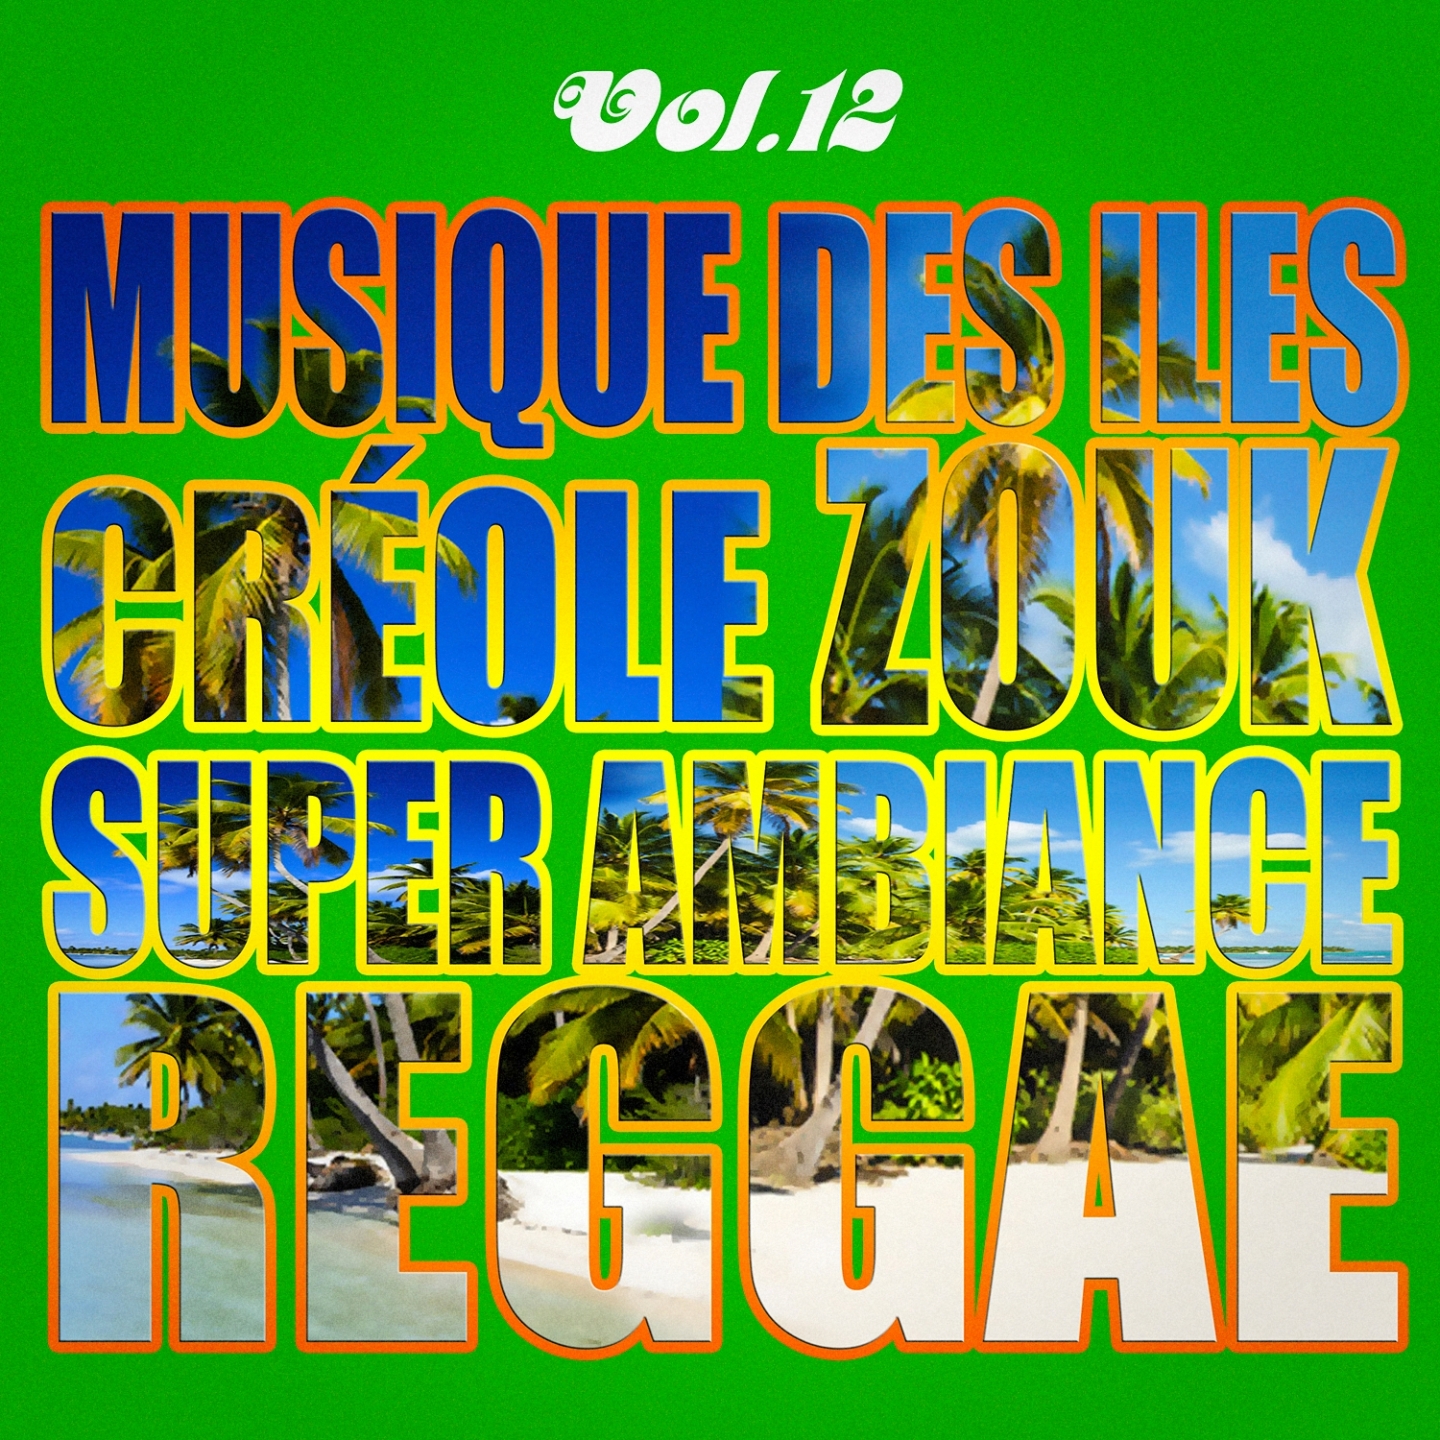 Musiques Des les: Cre ole, Ambiance, Zouk, Reggae, Vol. 12